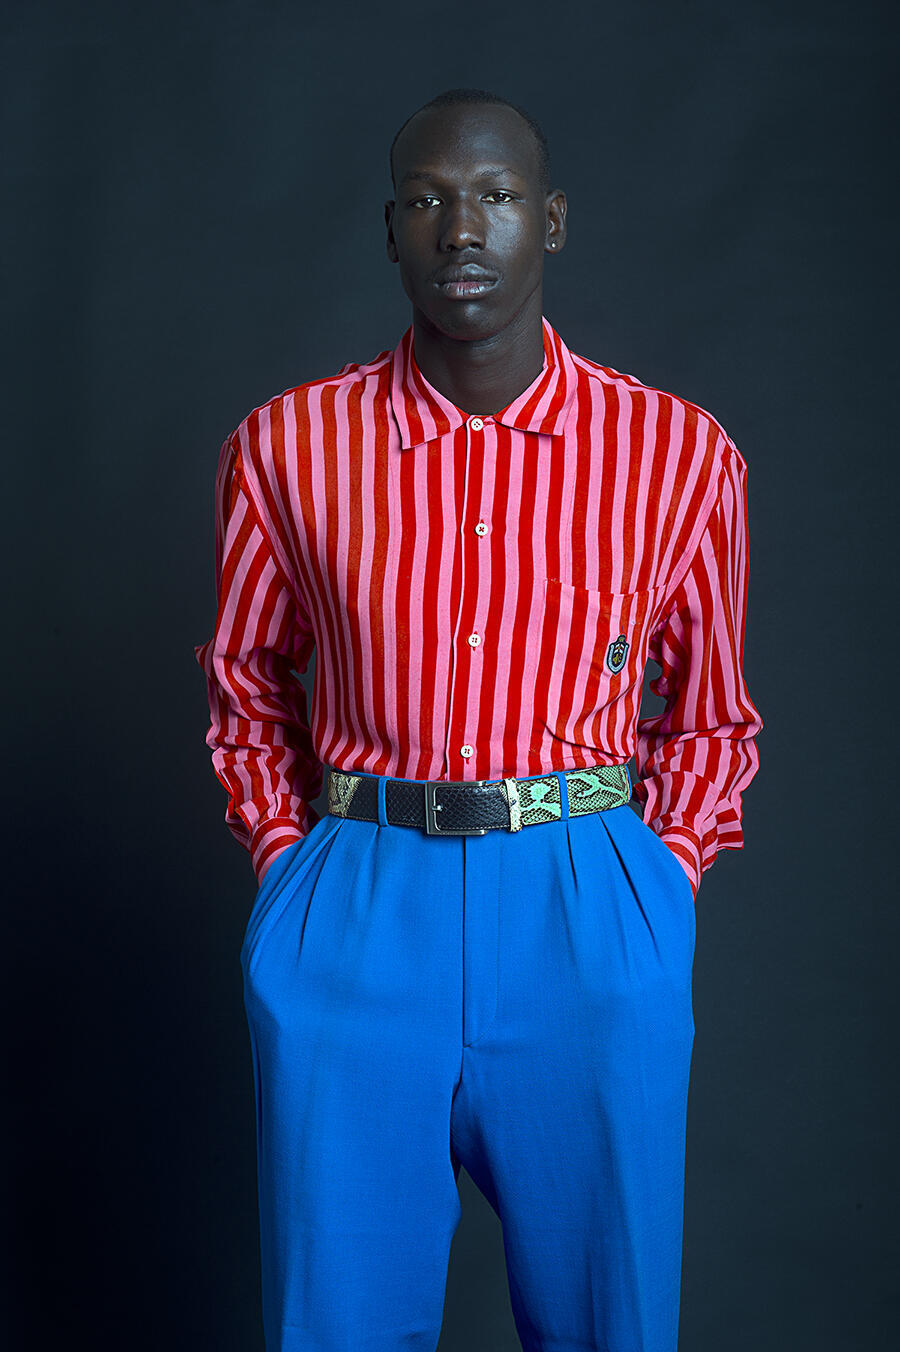 הפקת אופנה עם עמנואל לאם, פליט מדרום סודן